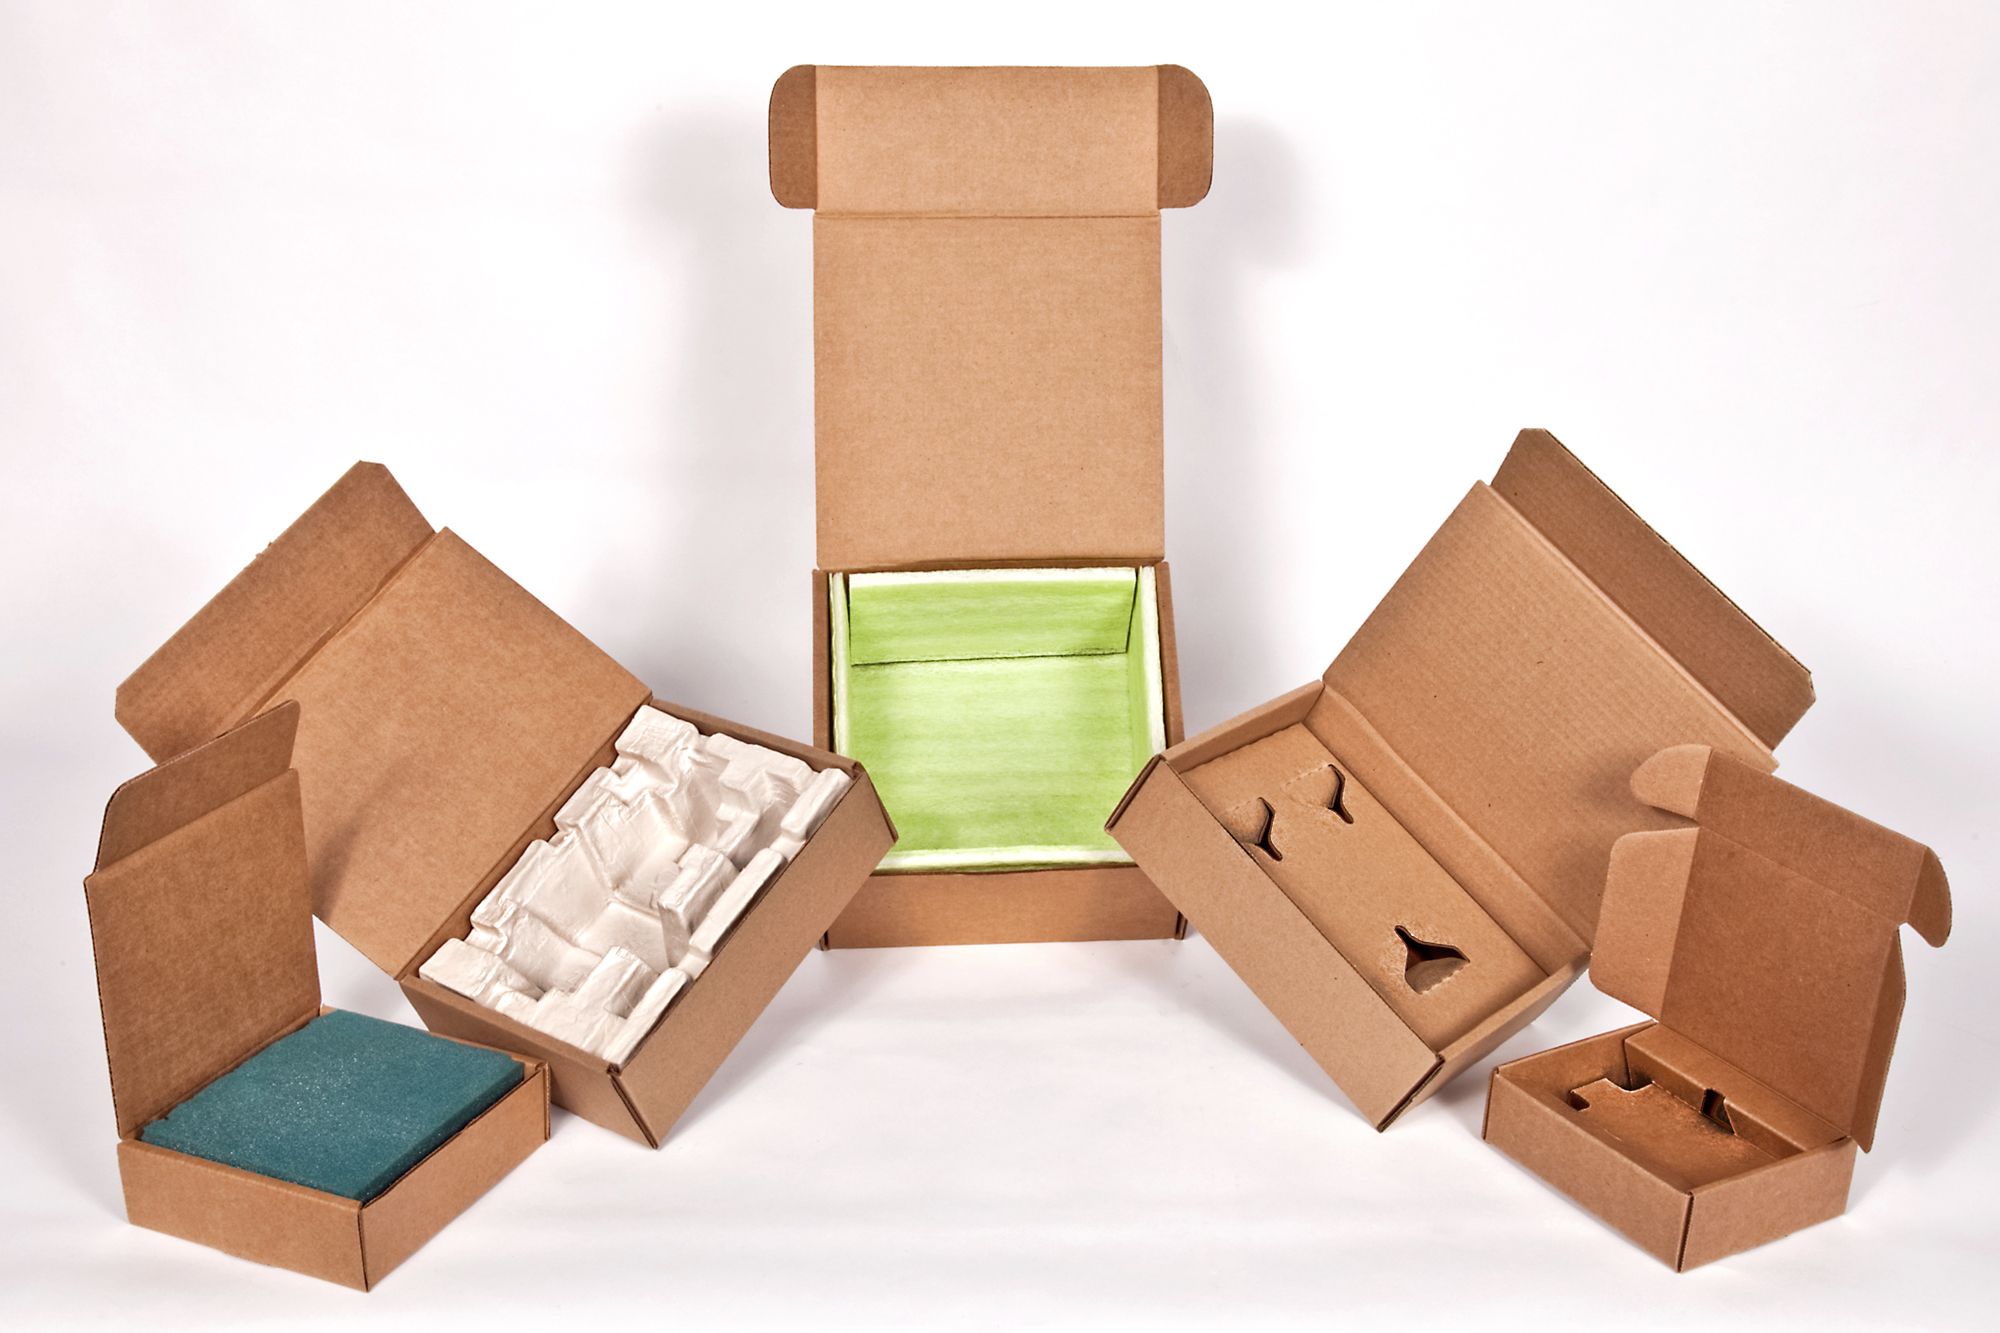 Custom cardboard boxe